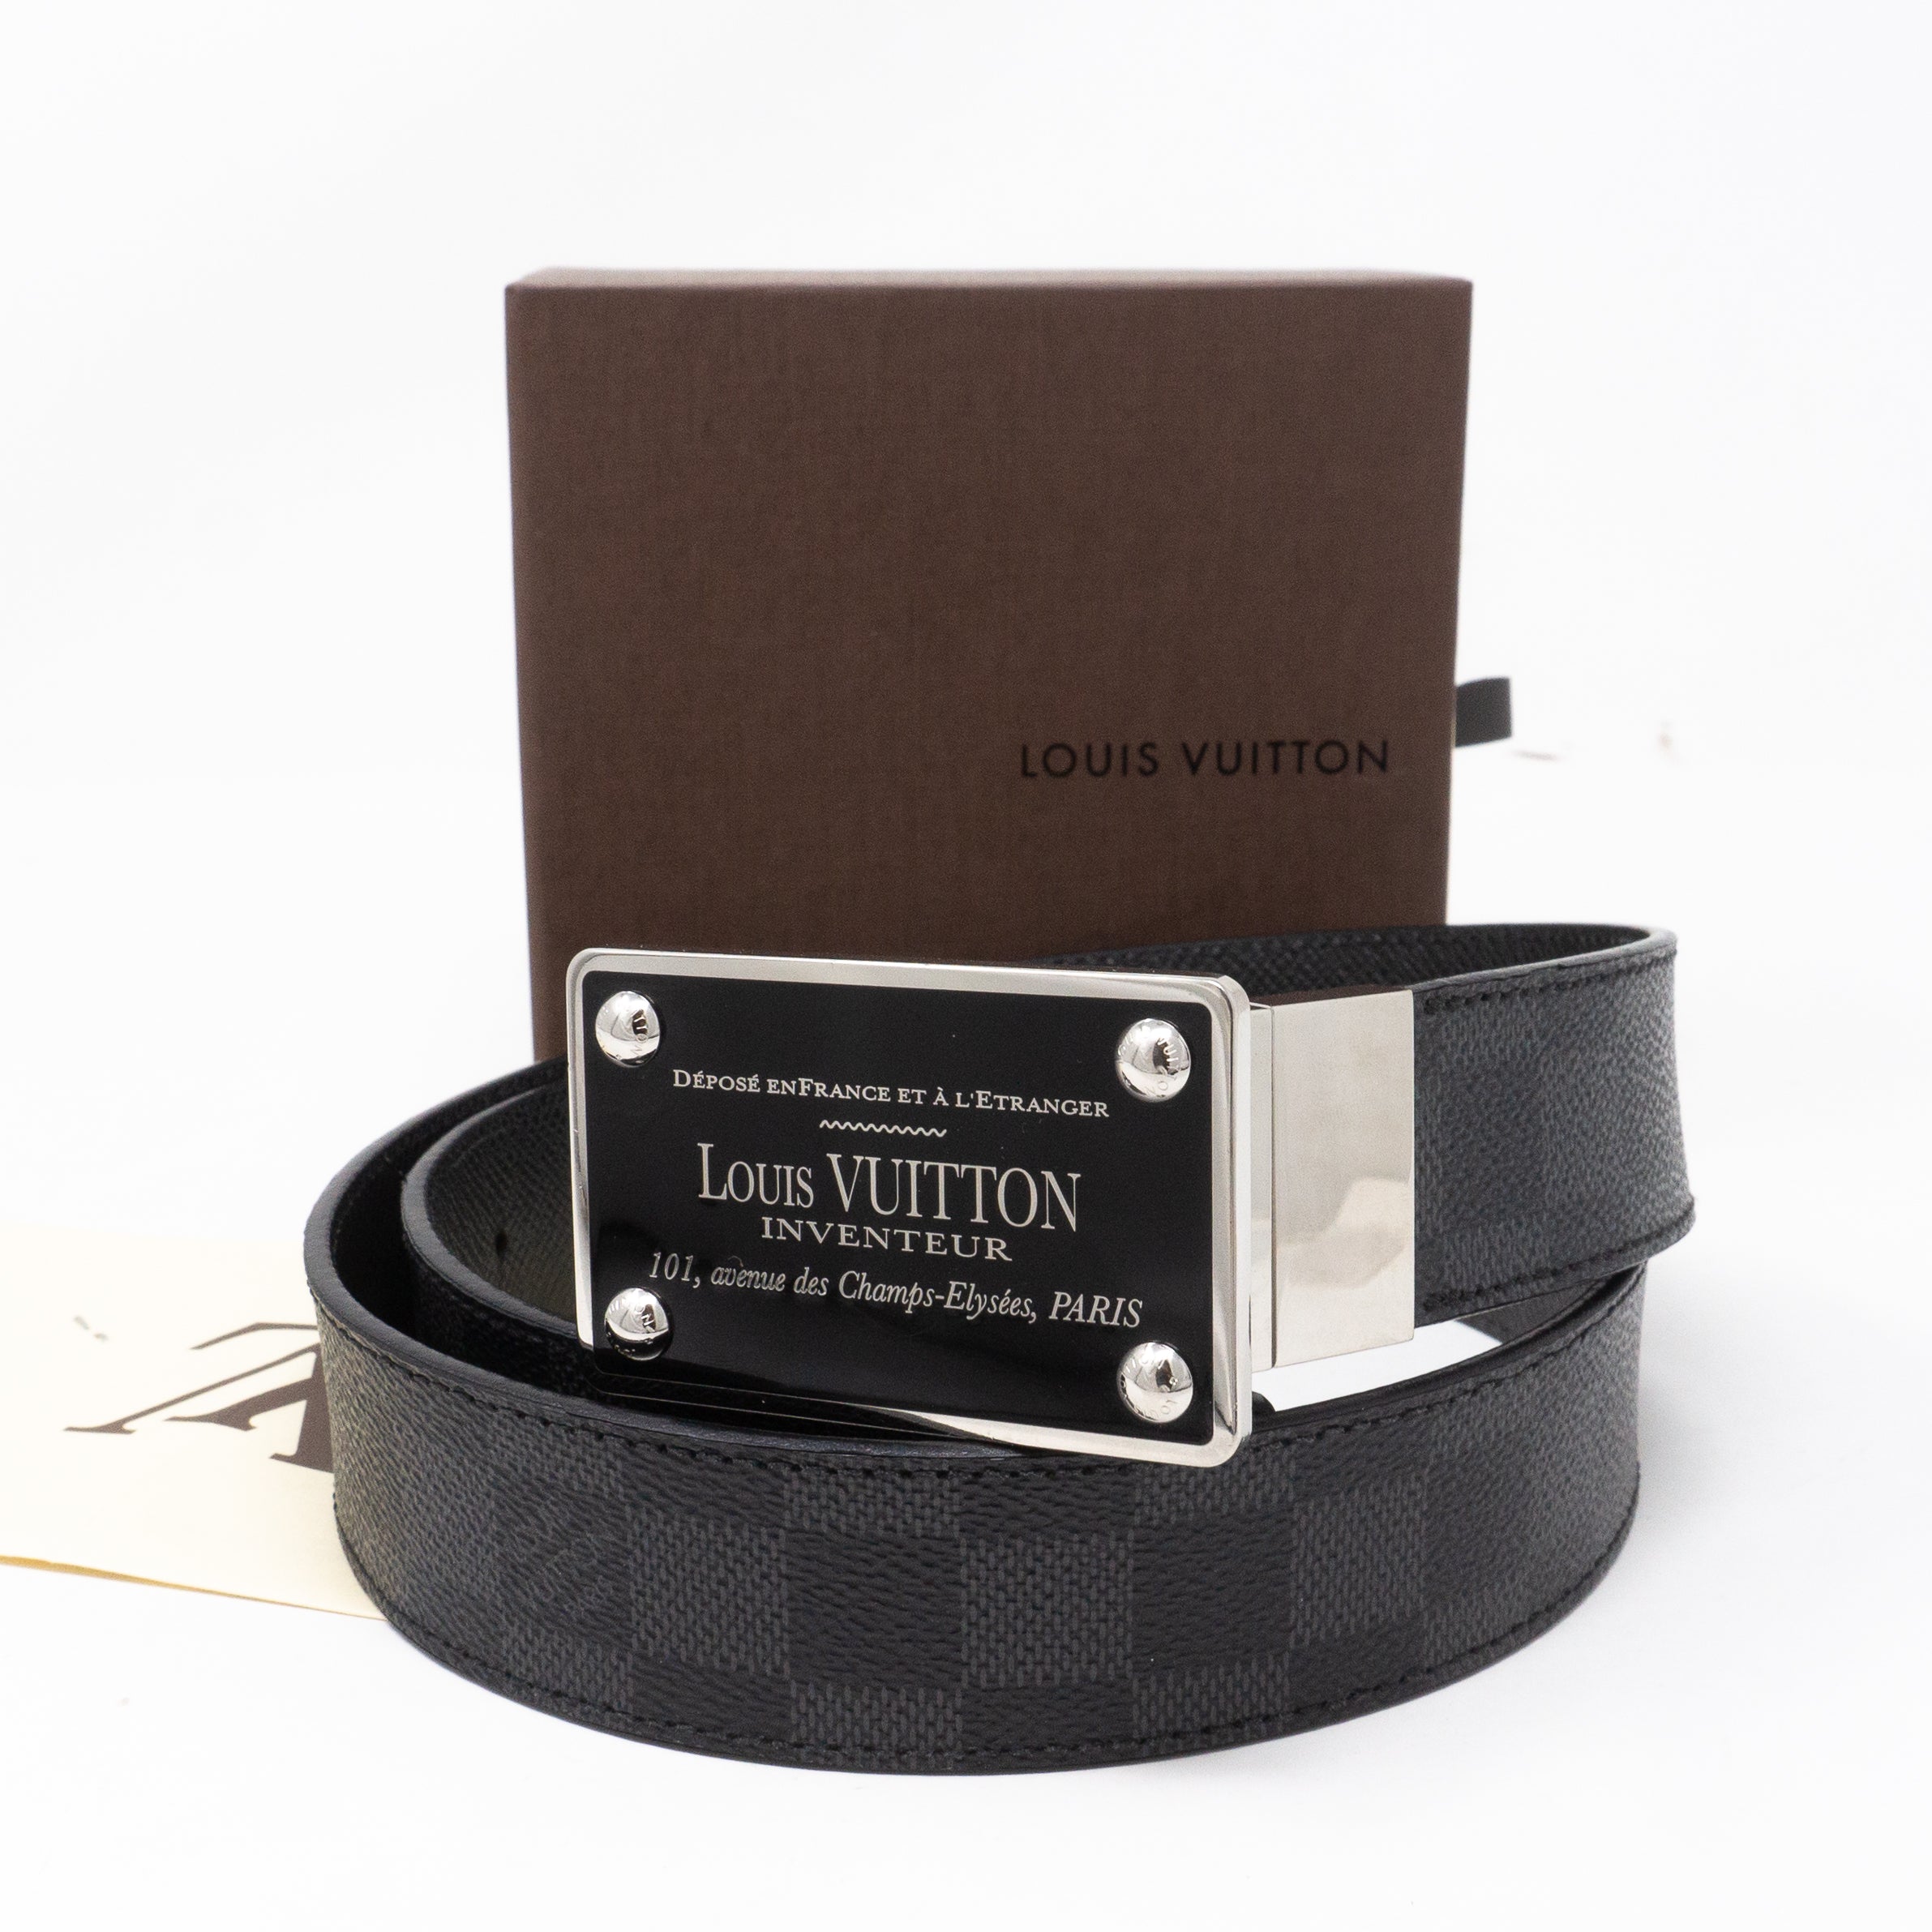 Auth Check: LV Inventeur Damier Graphite Belt